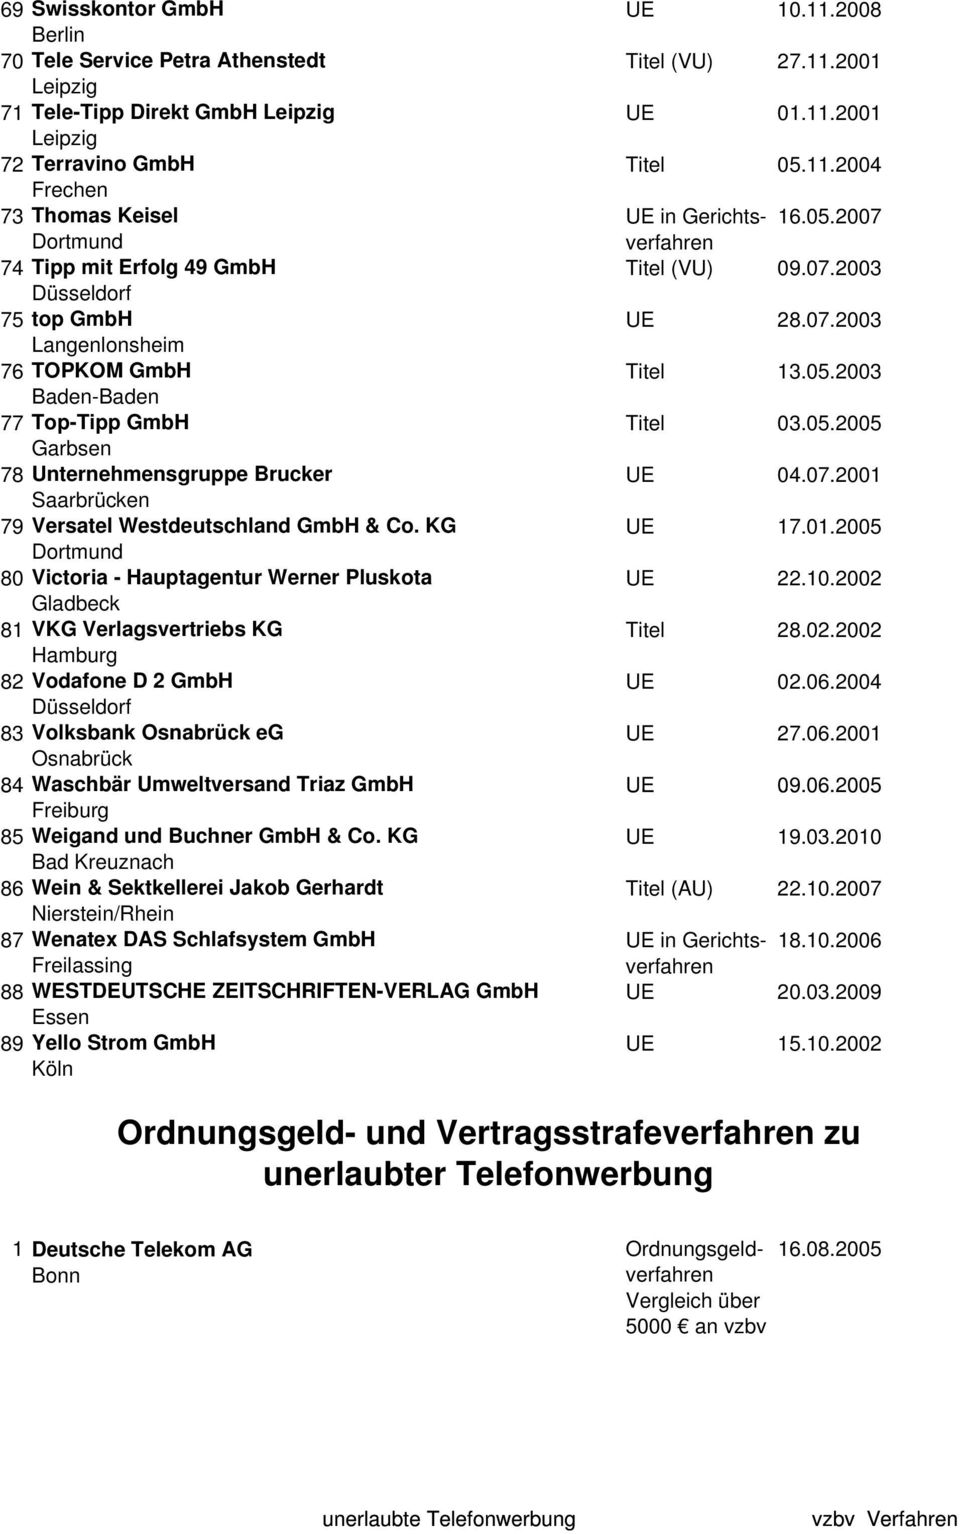 05.2005 Garbsen 78 Unternehmensgruppe Brucker UE 04.07.2001 Saarbrücken 79 Versatel Westdeutschland GmbH & Co. KG UE 17.01.2005 Dortmund 80 Victoria - Hauptagentur Werner Pluskota UE 22.10.